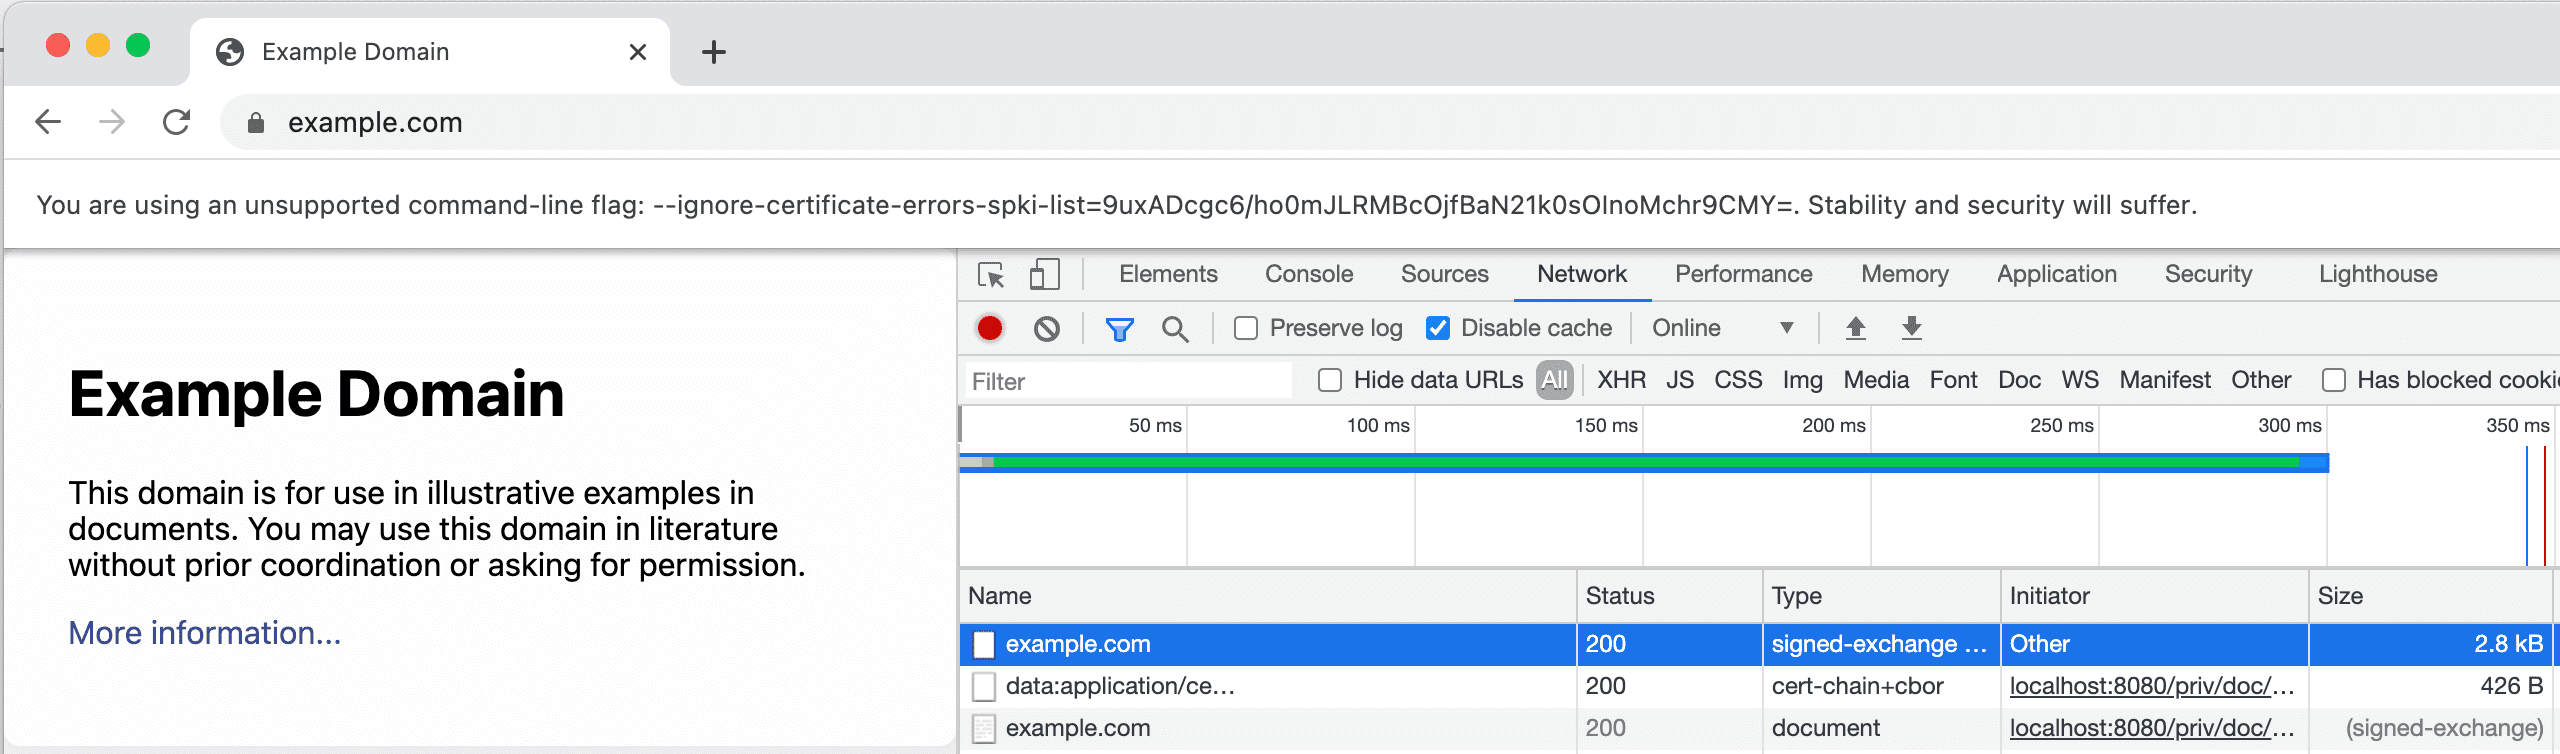 Captura de pantalla de la pestaña Network de Herramientas para desarrolladores donde se muestra un SXG y su certificado.